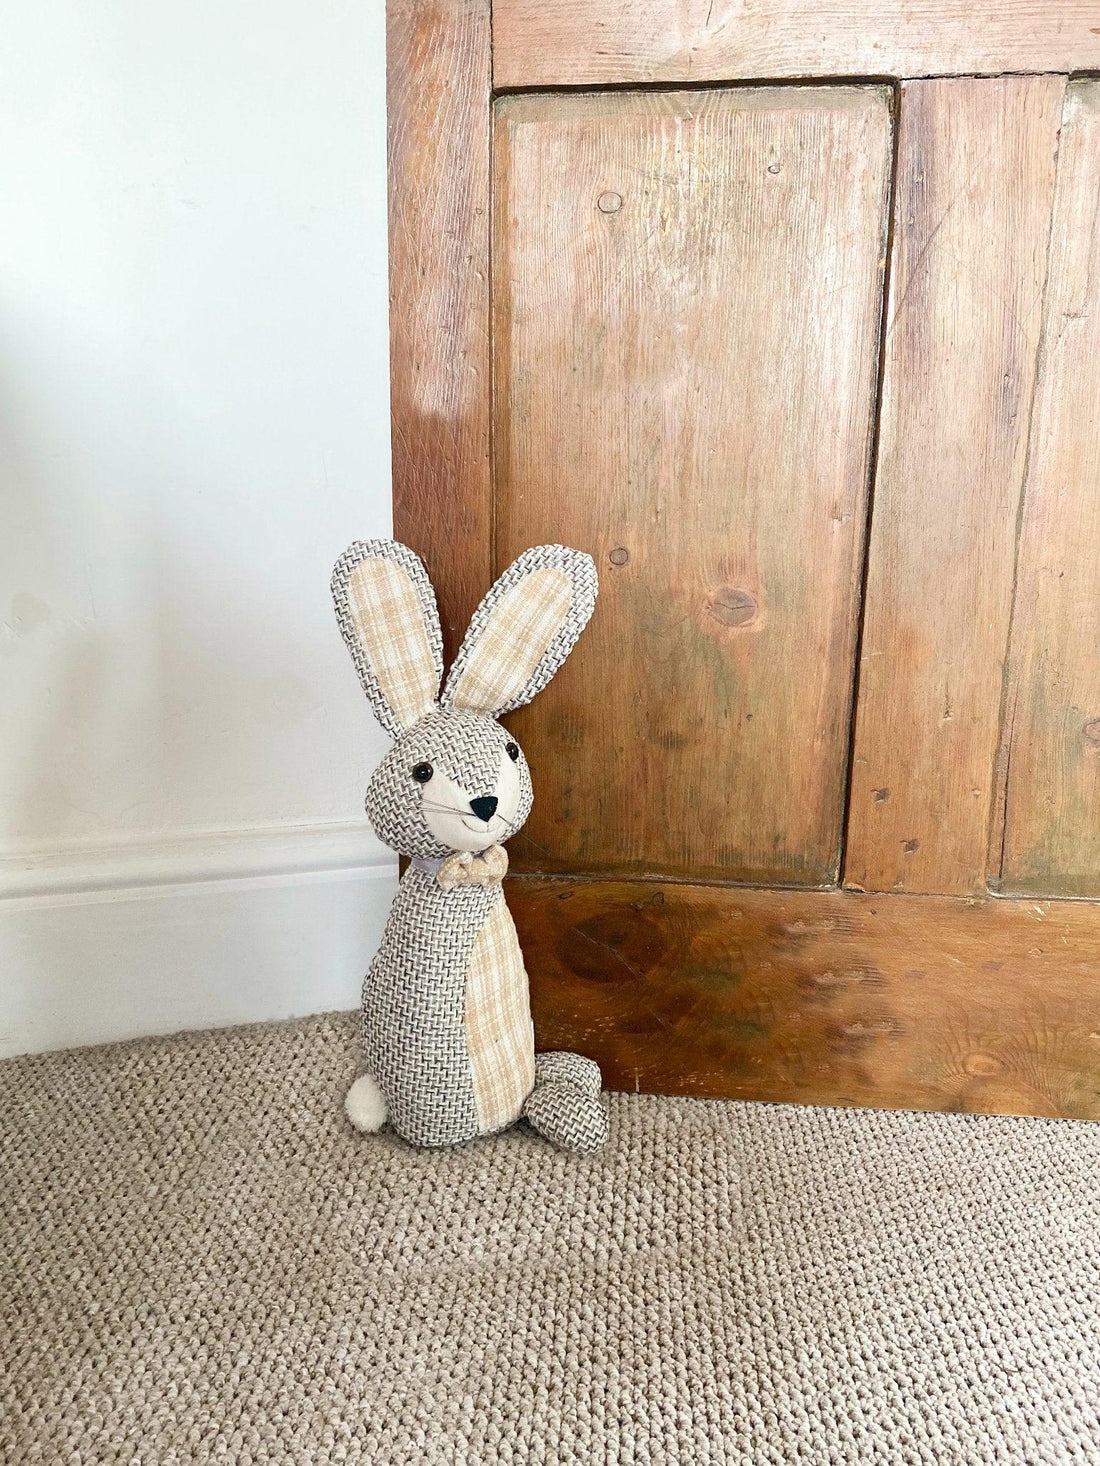 Woven Fabric Rabbit Doorstop - £27.99 - 